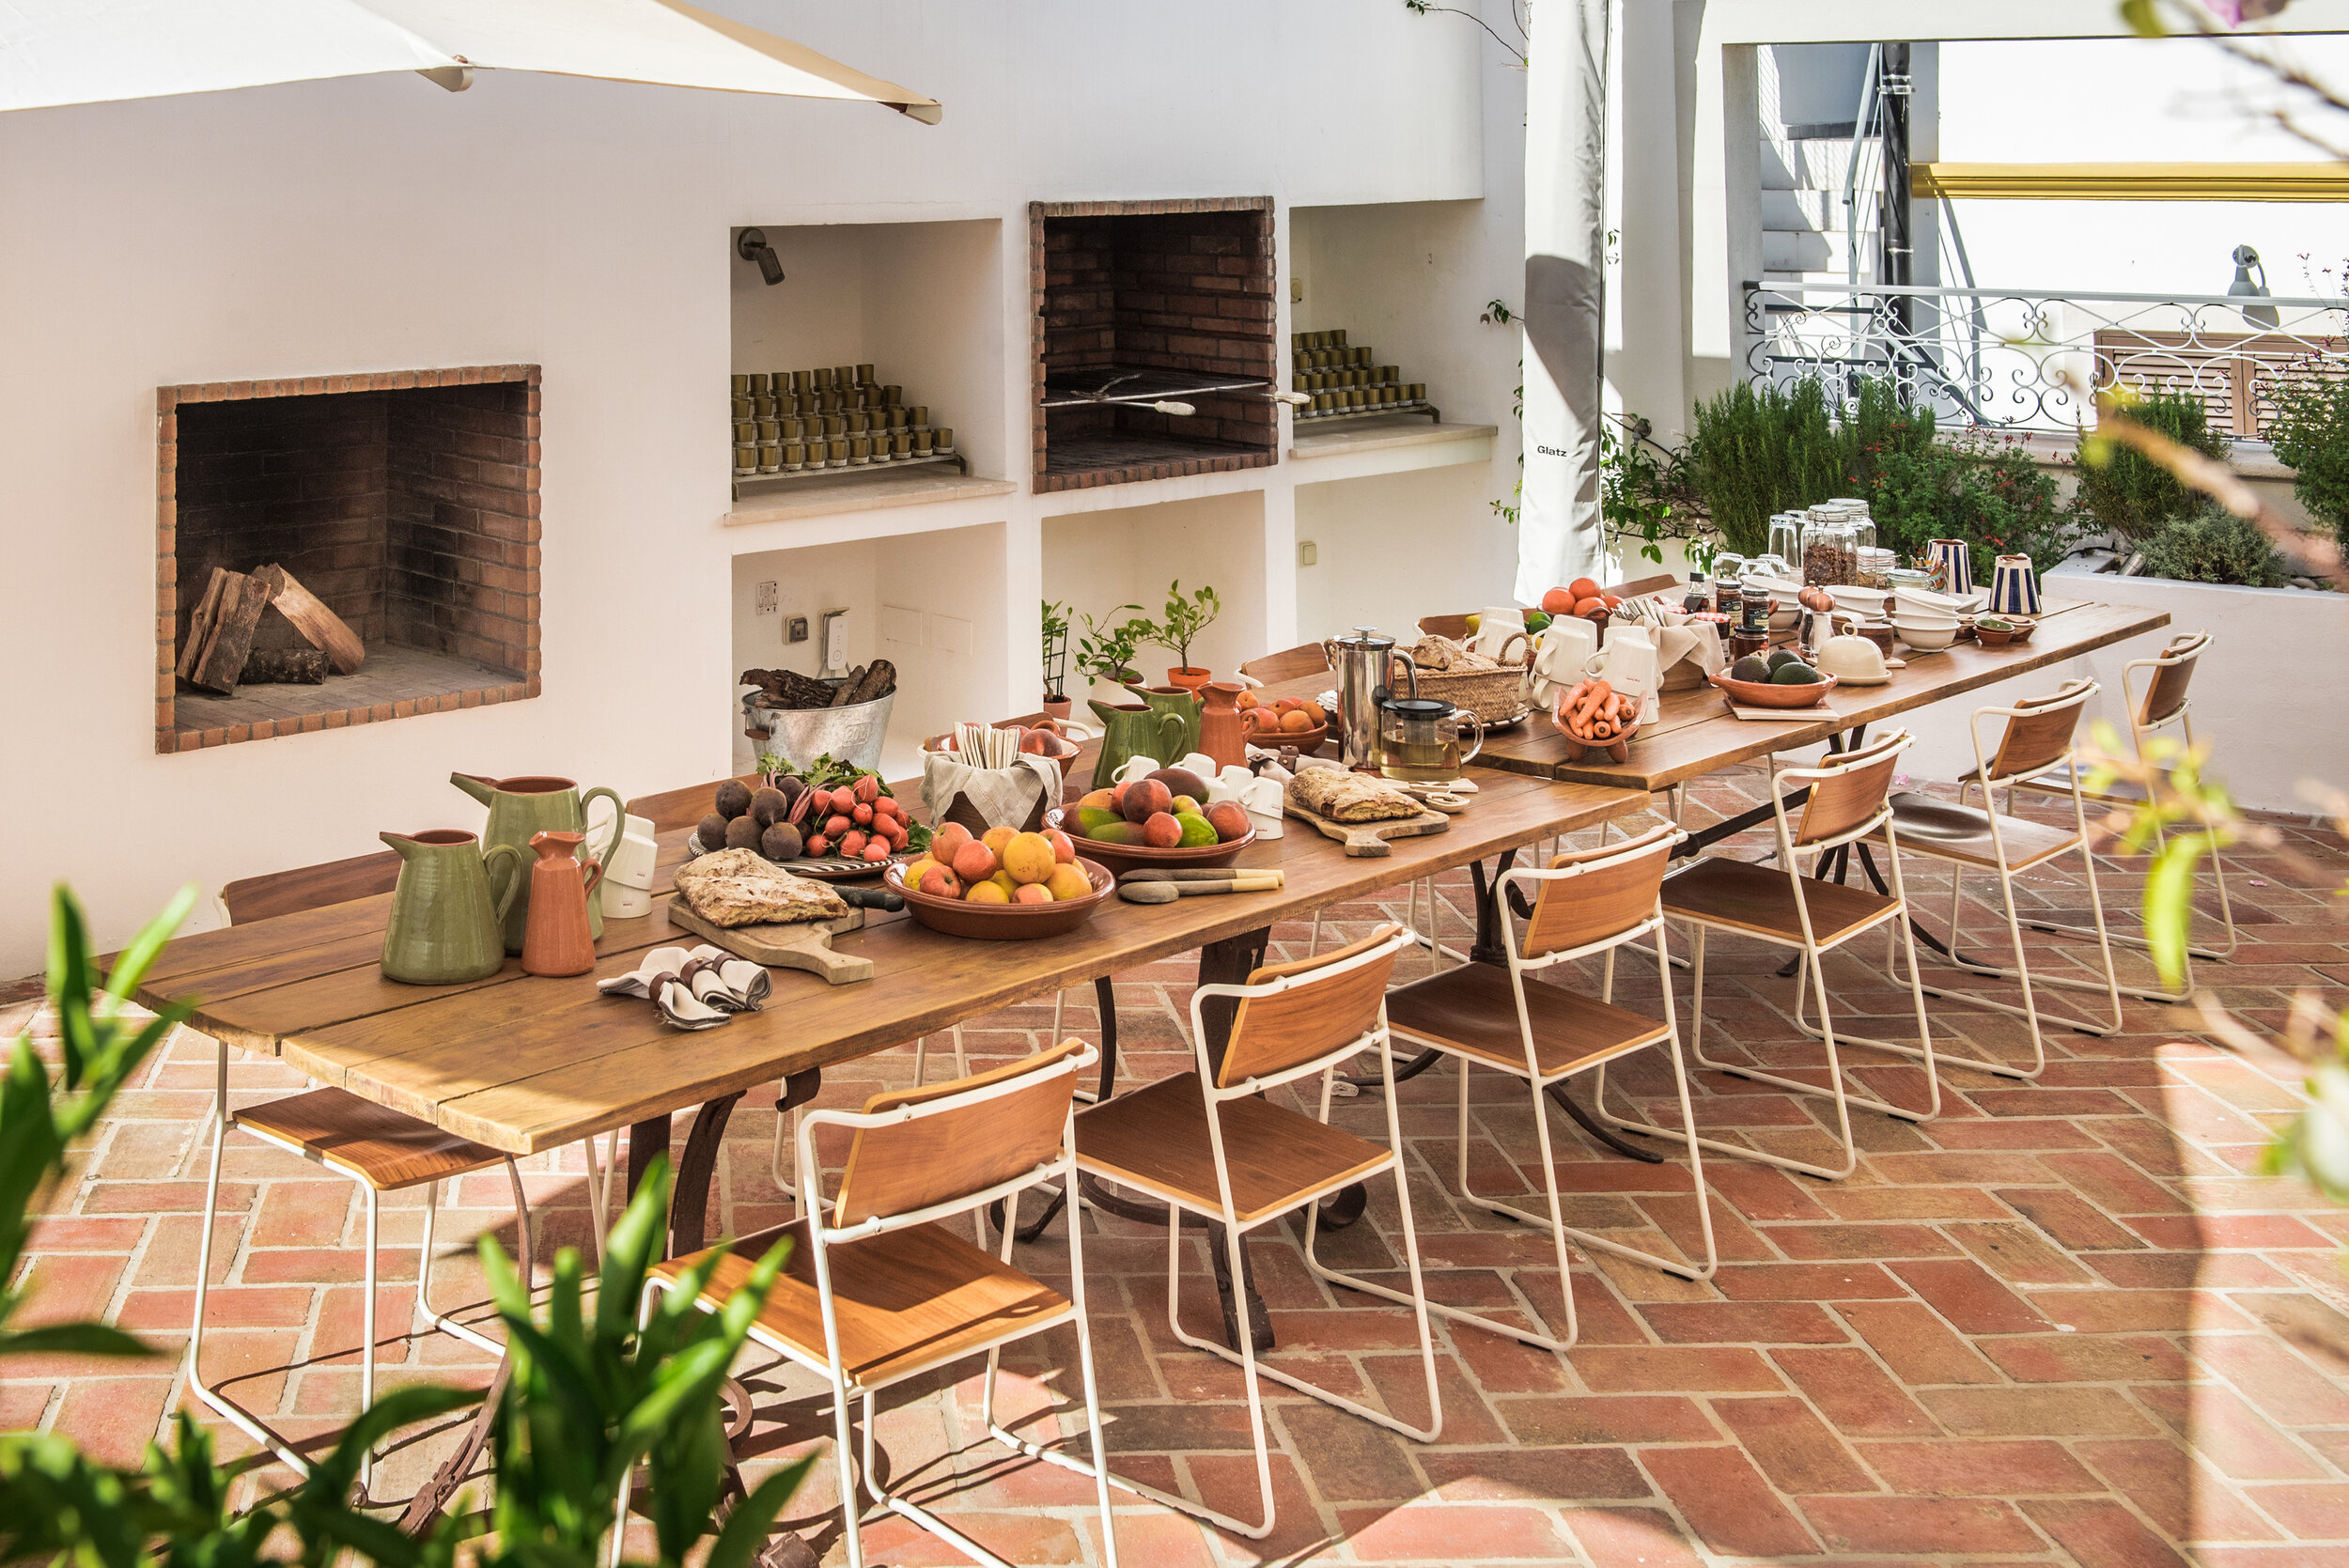 Kitchen terrace - Casa Fuzetta (78).jpg